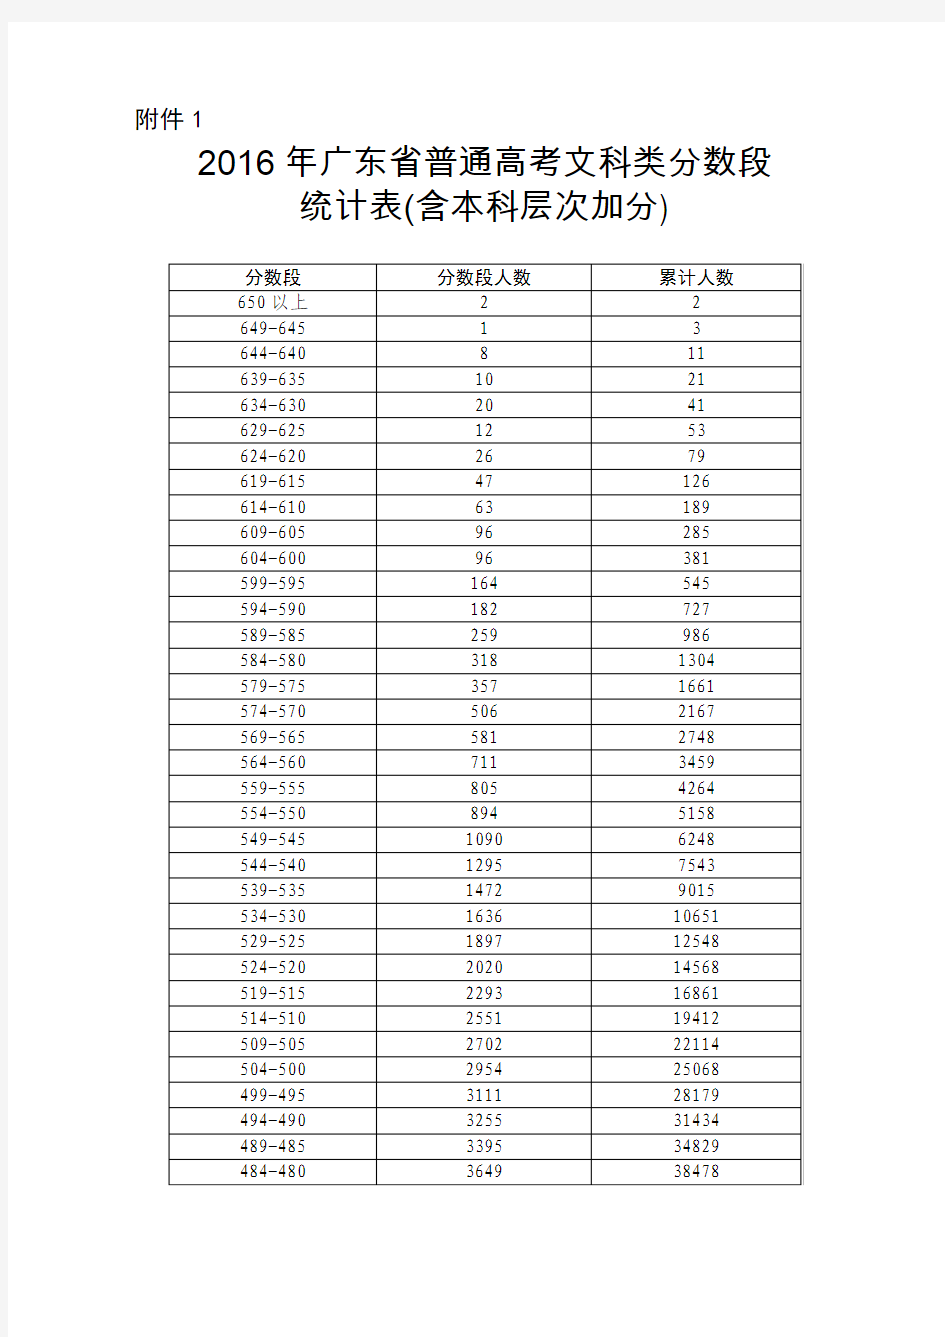 2016年广东省普通高考分数段